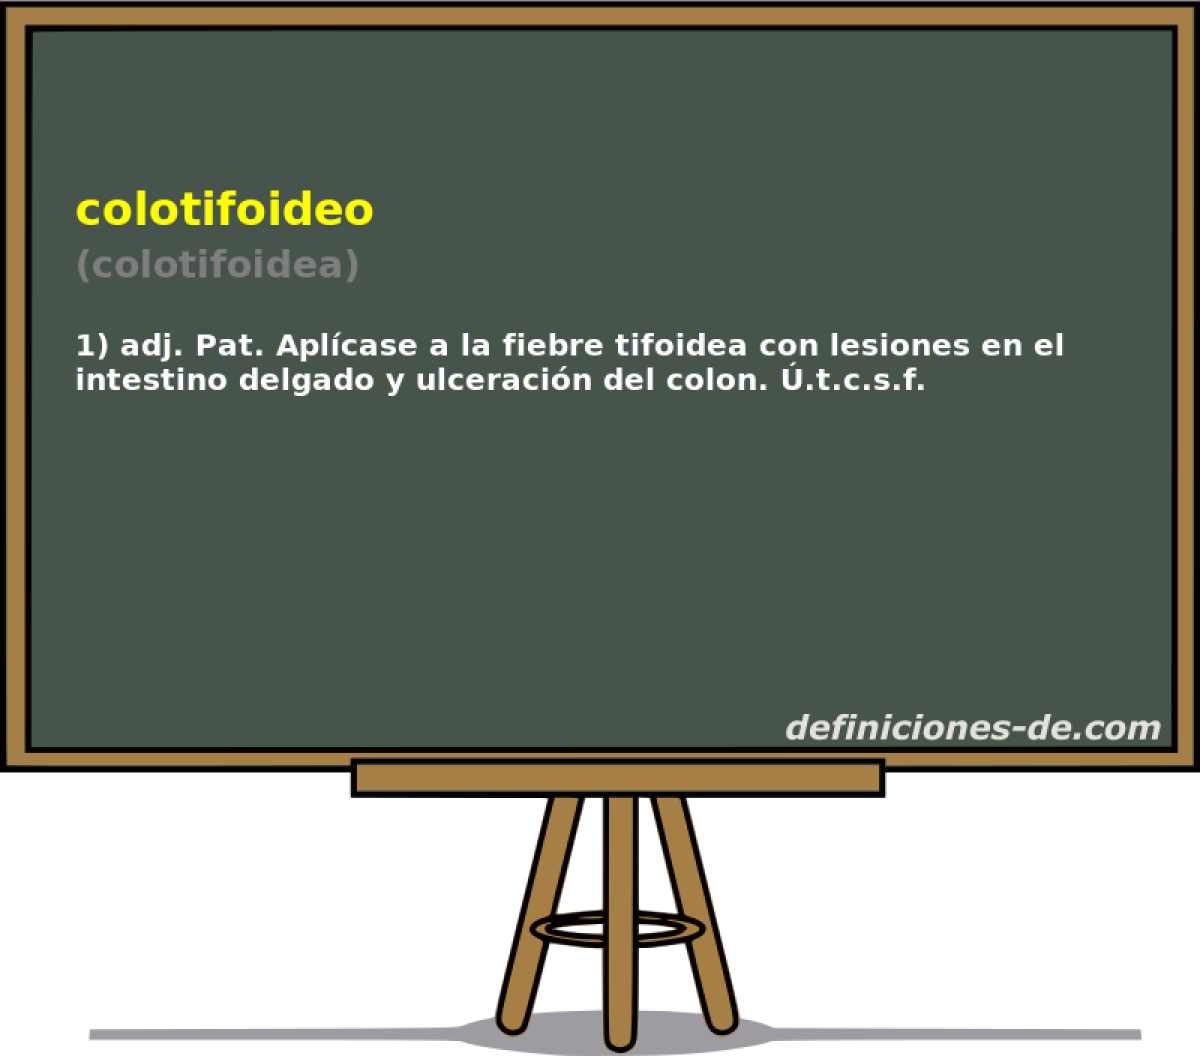 colotifoideo (colotifoidea)